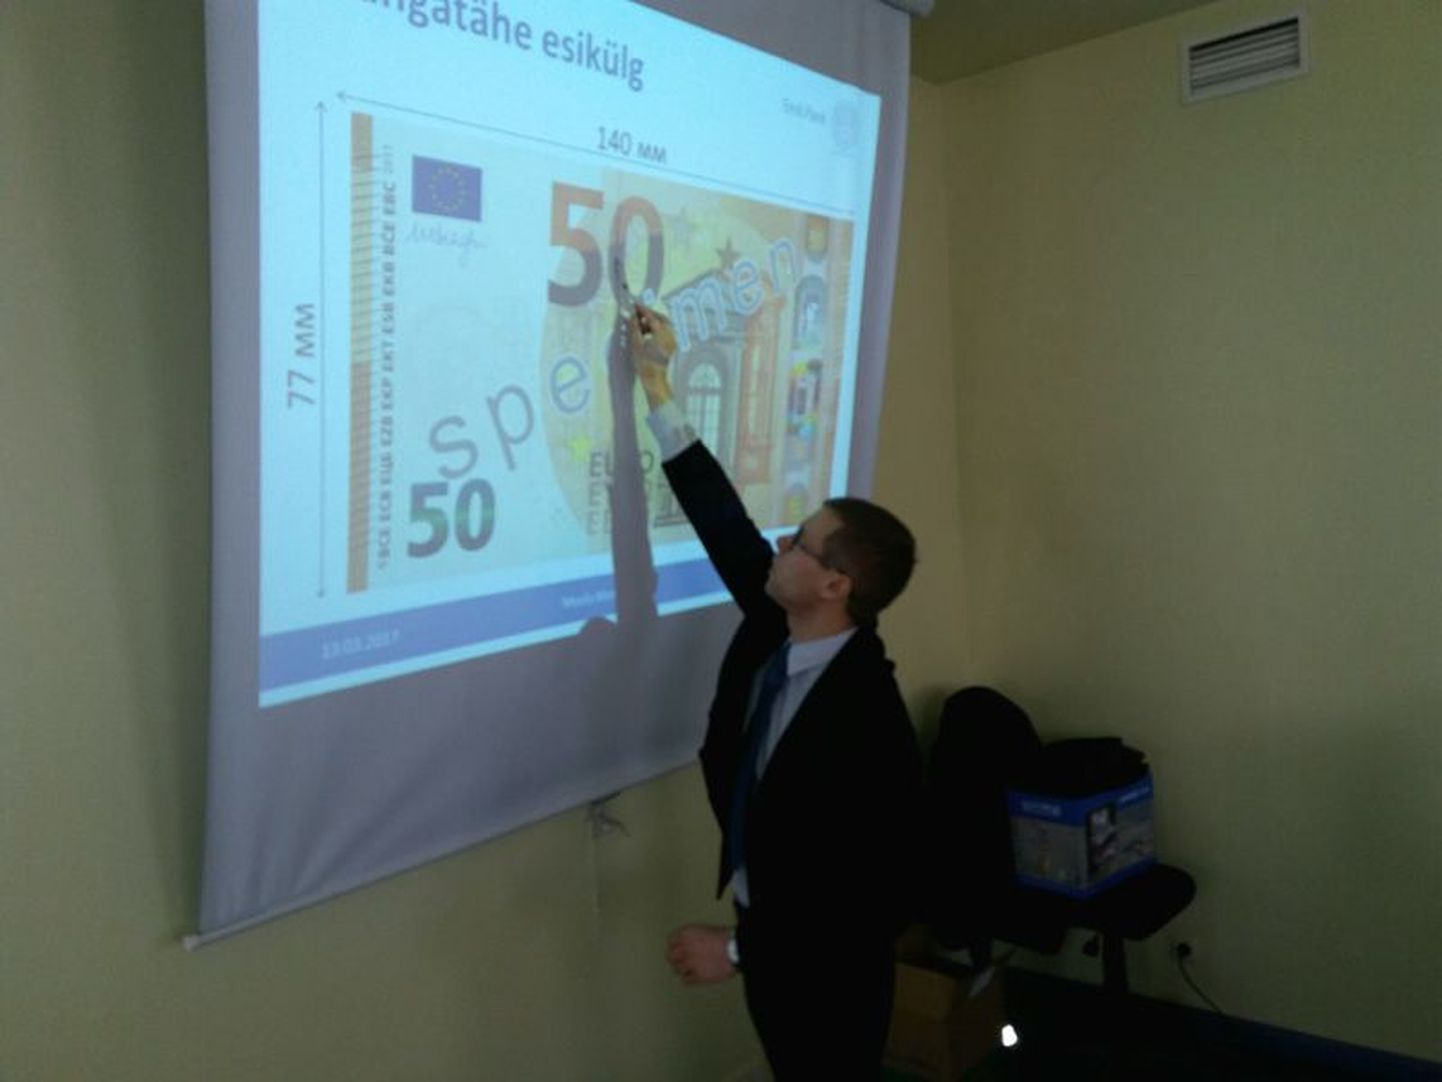 Lääne-Virumaa keskraamatukogus tutvustas uusi 50-euroseid kupüüre ekspert-analüütik Meelis Metus.